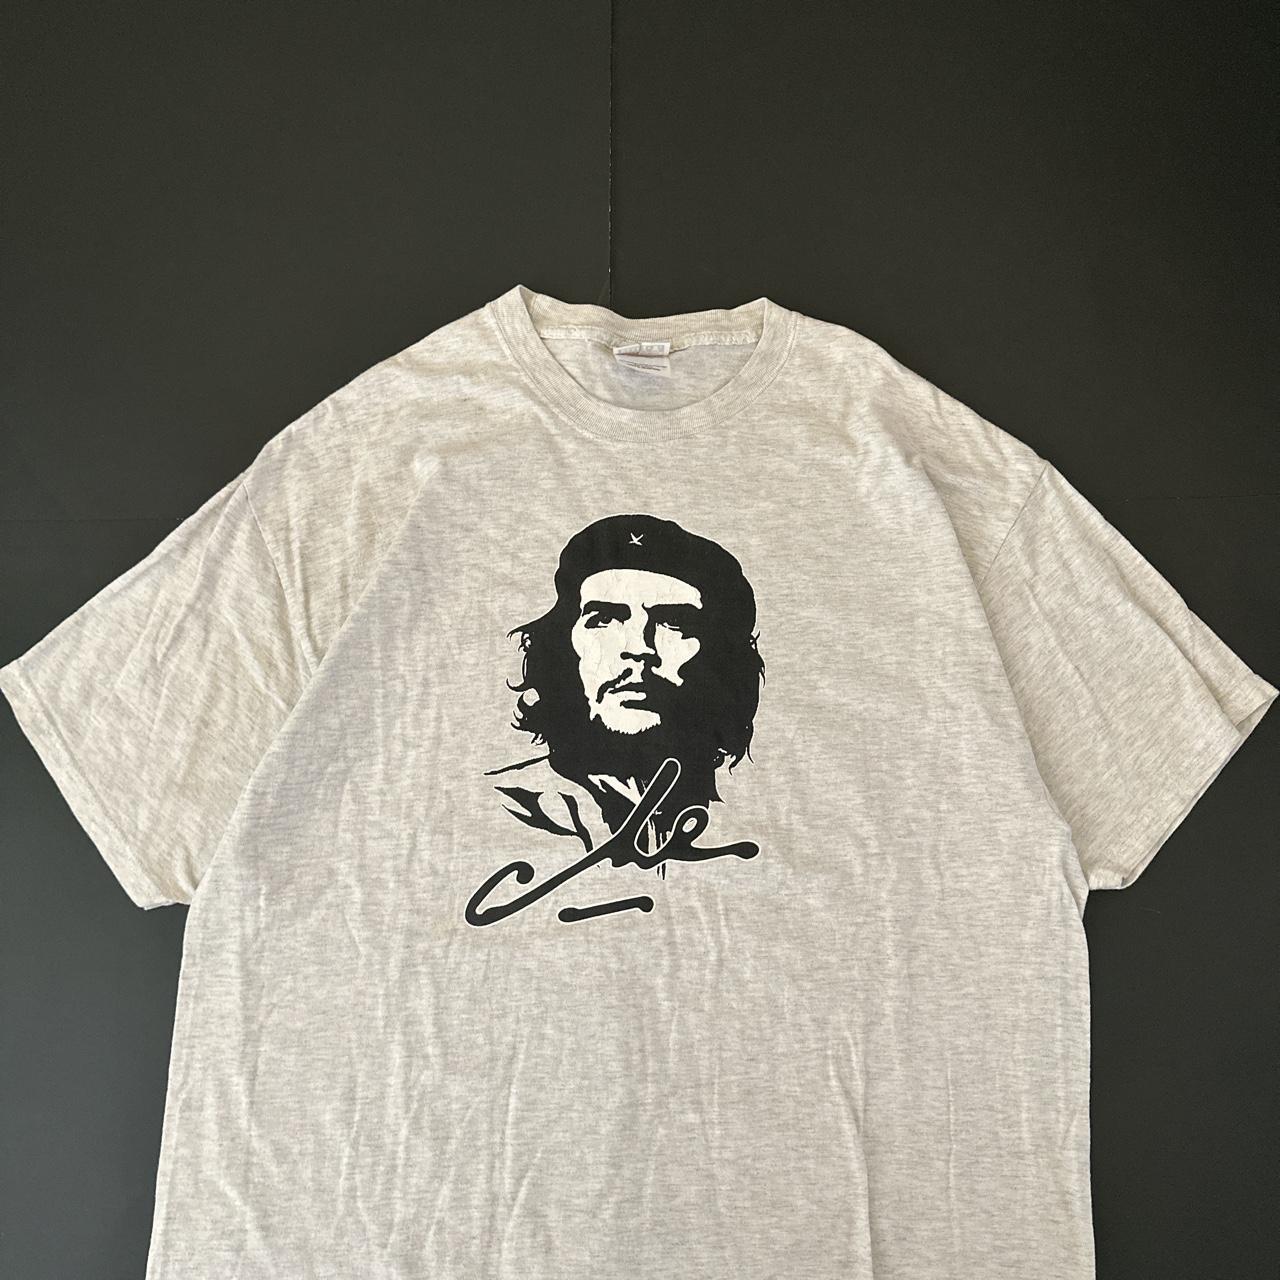 Che Guevara Viva La Revolucion Retro Vintage Style T-Shirt